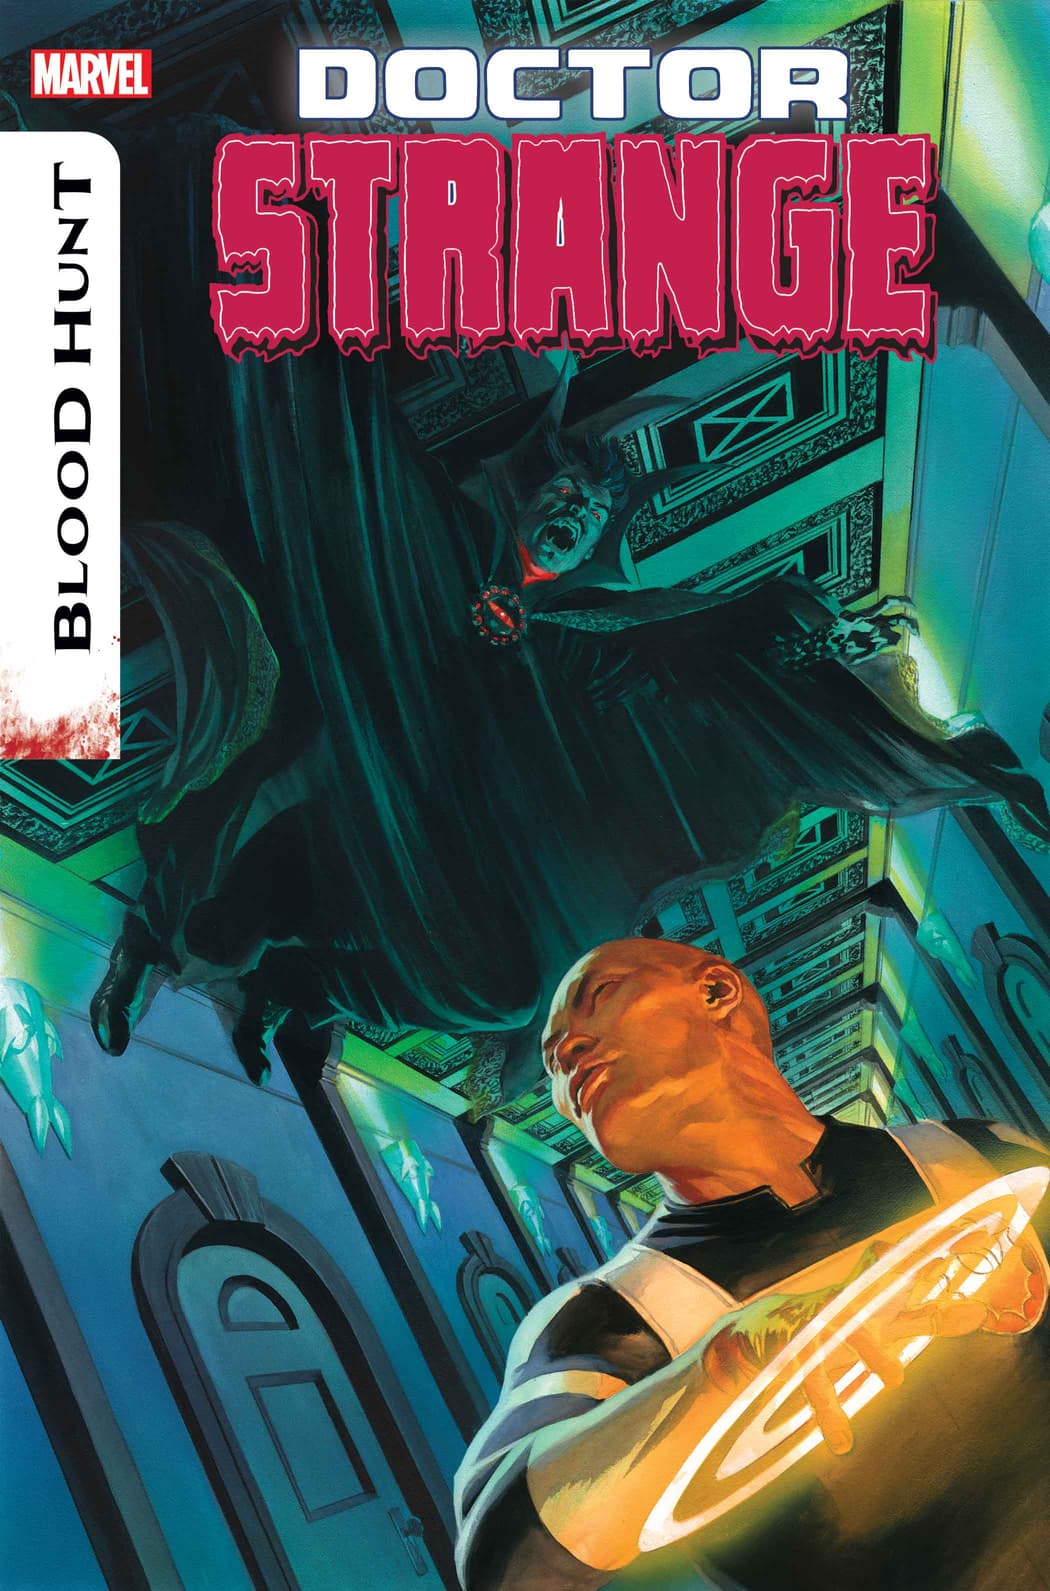 Doctor Strange #16 cover art